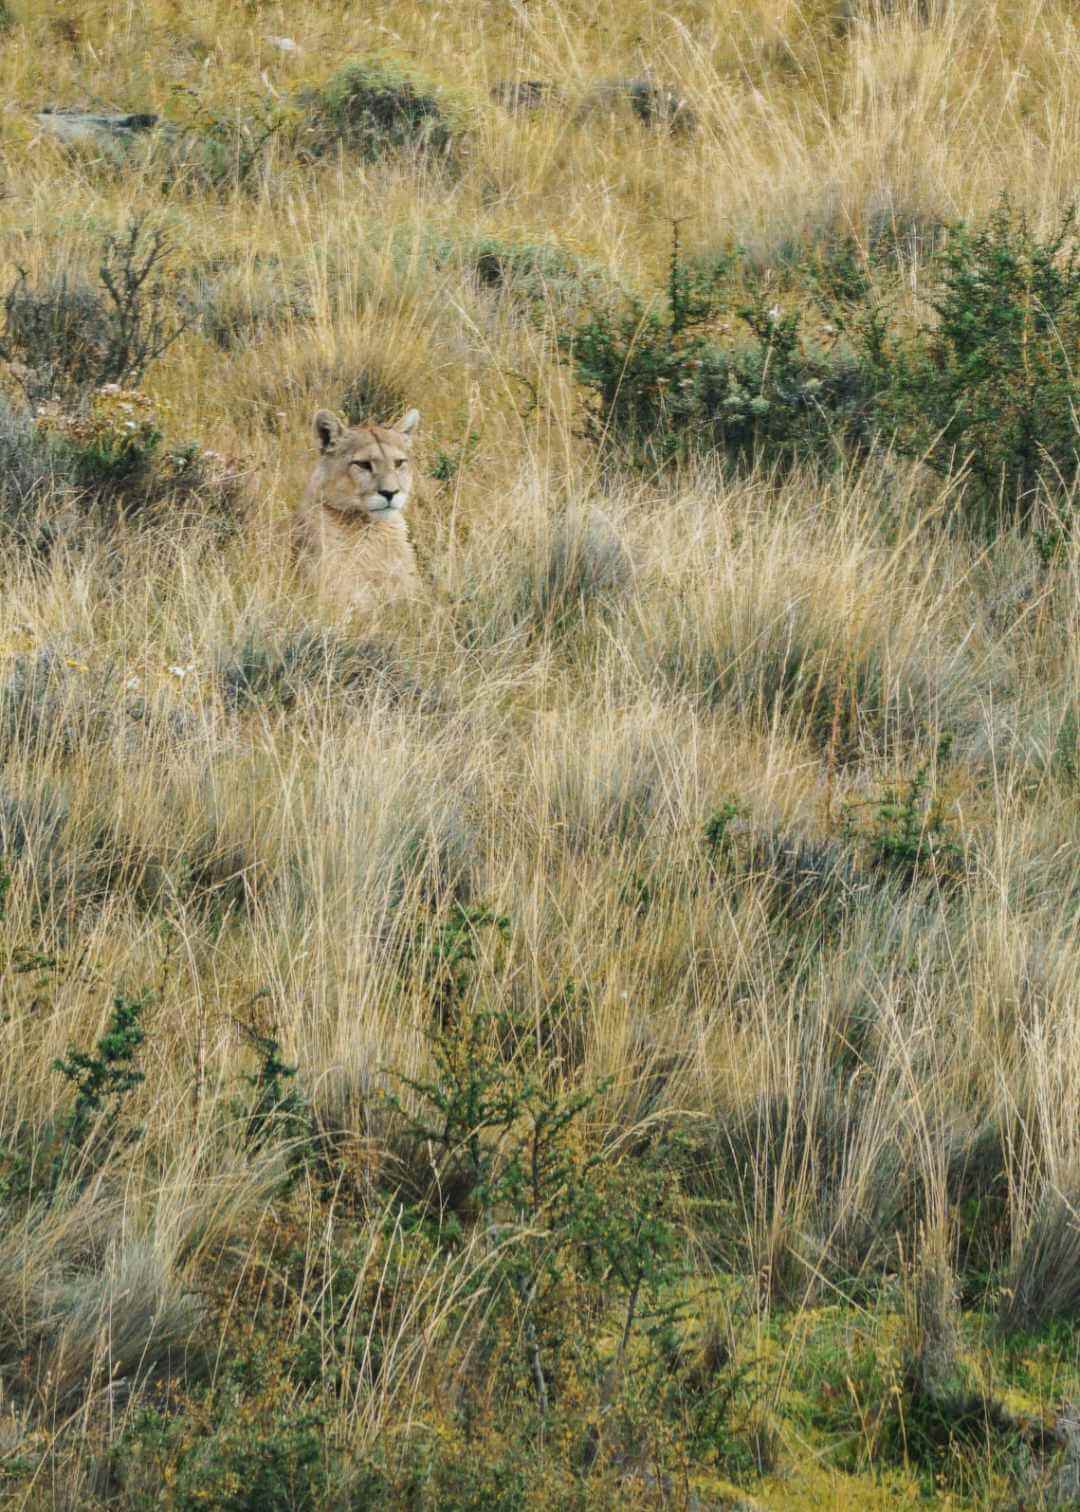 Puma avistado en el Parque Nacional Torres del Paine